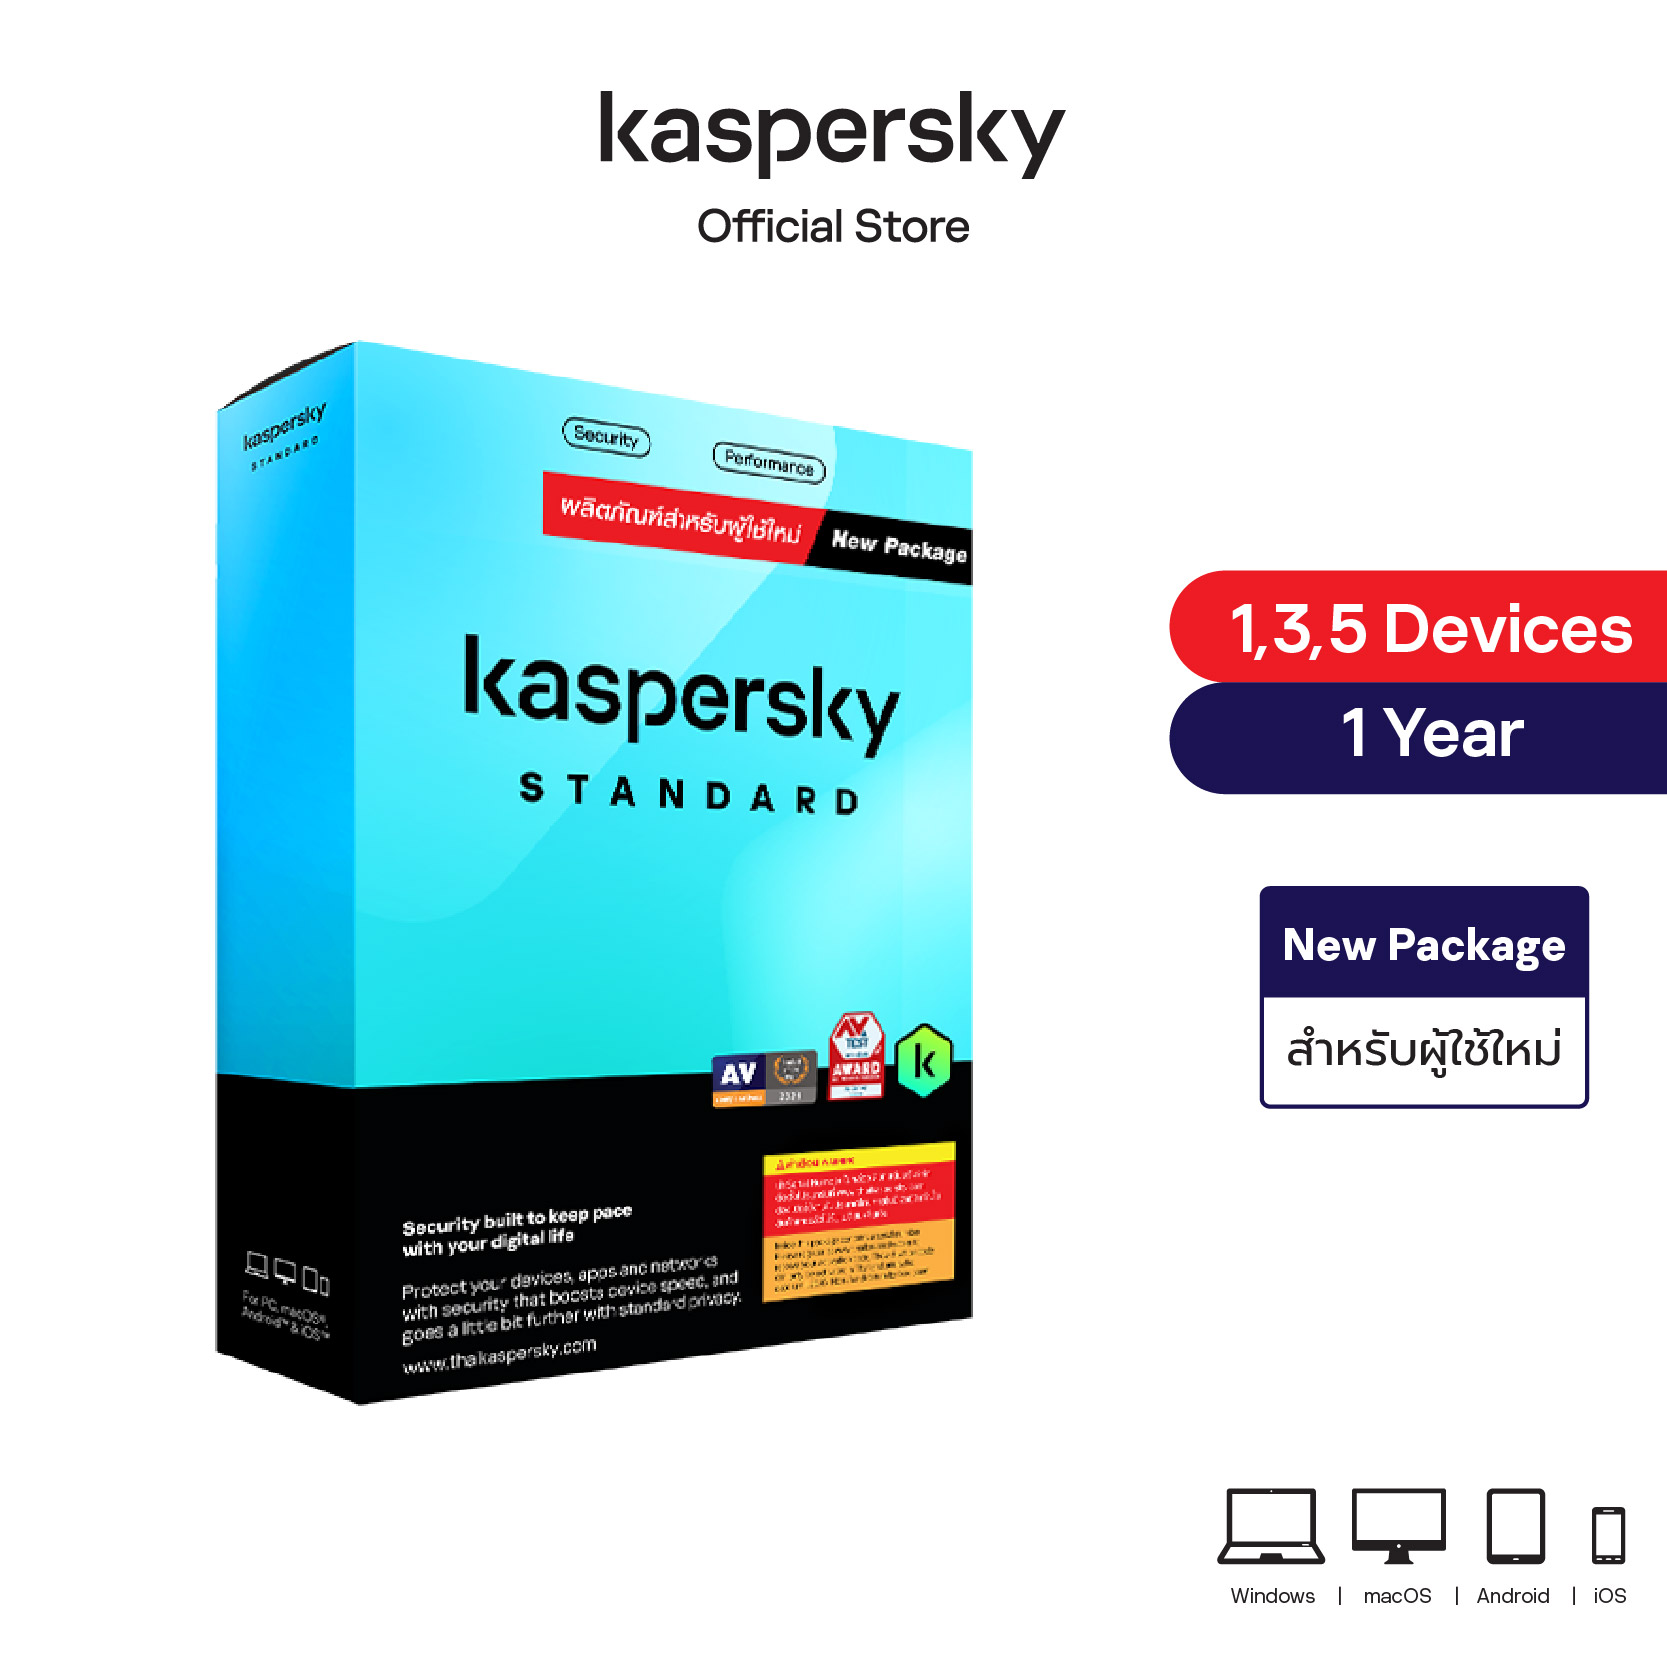 Kaspersky Standard (New Package)